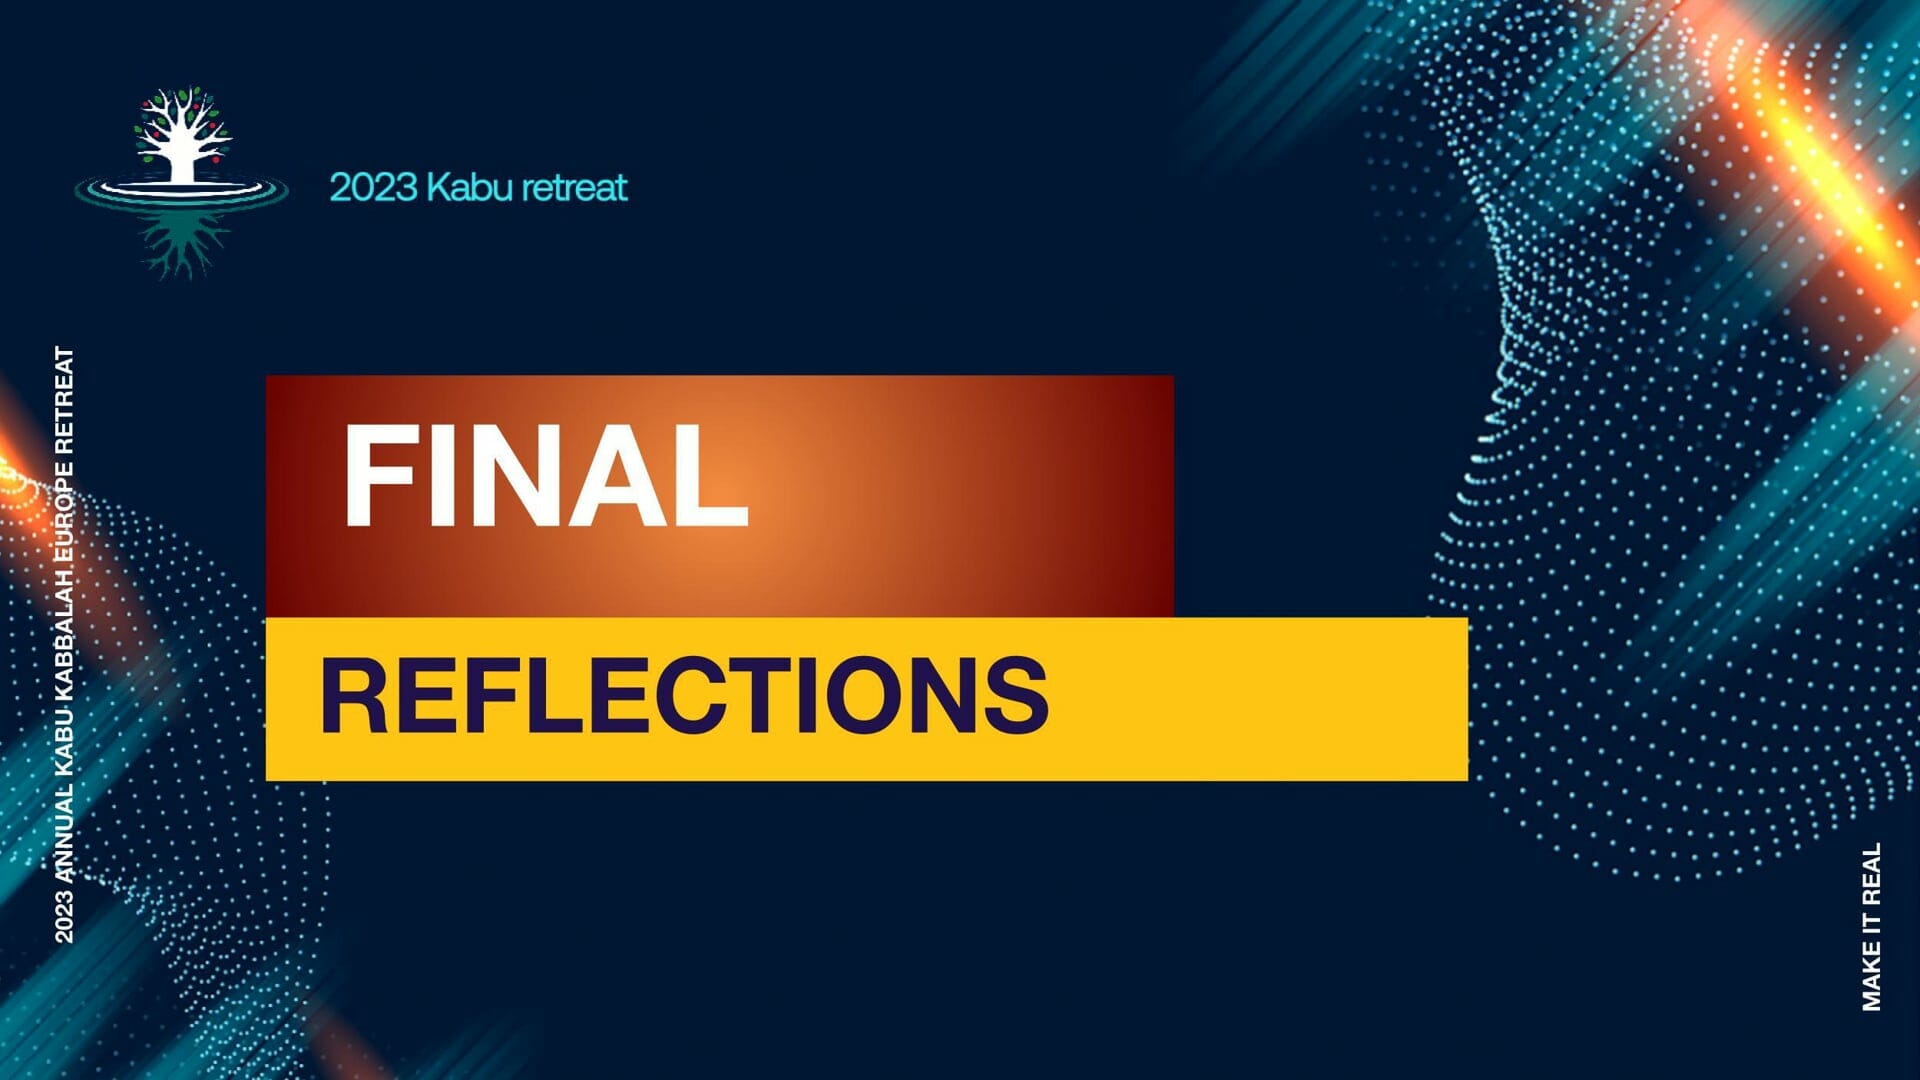 May 07, 2023 – Final Reflections